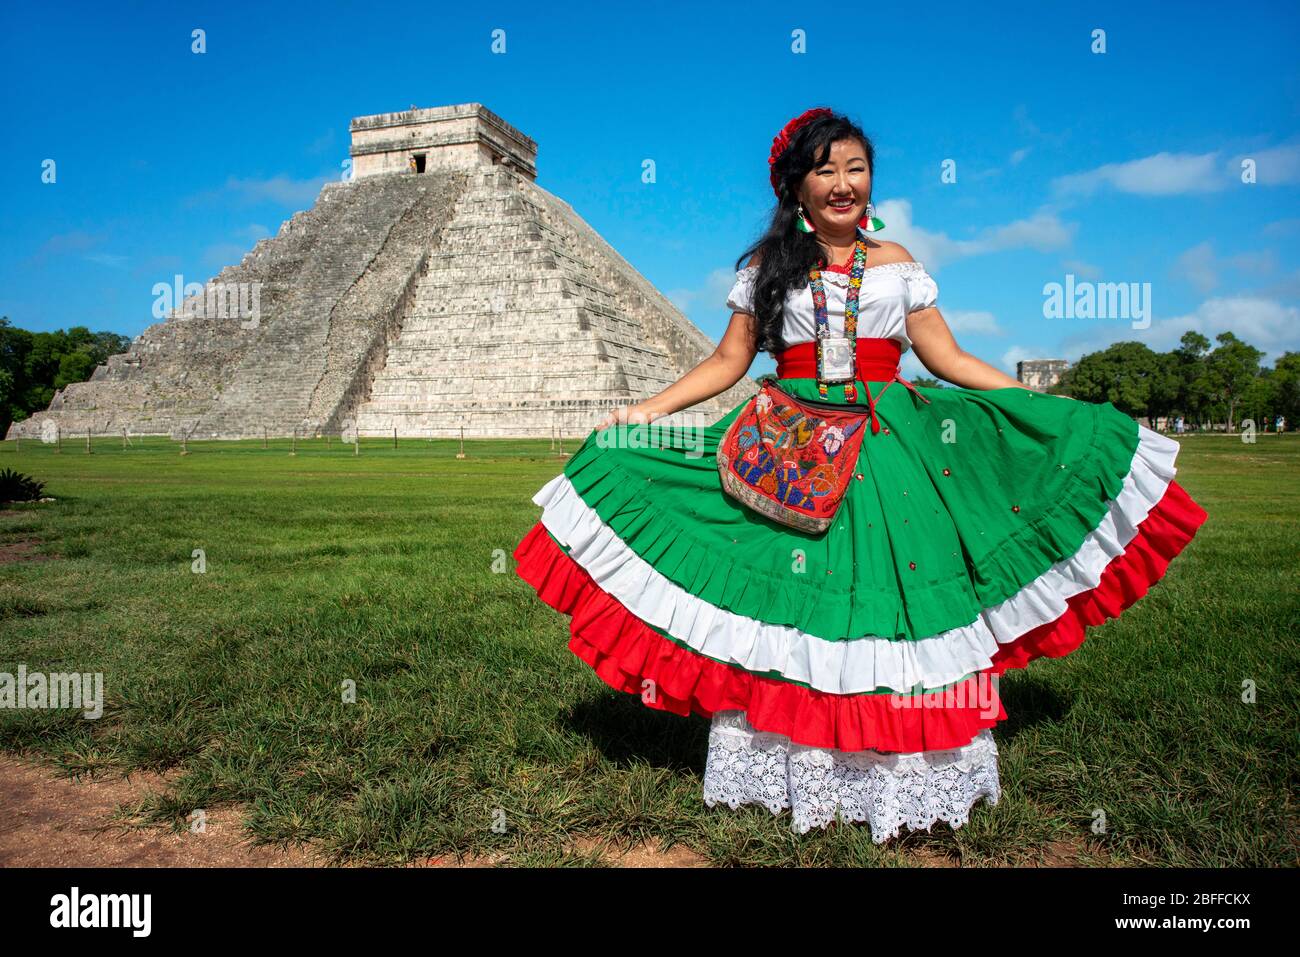 El Castillo, die Pyramide von Kukulkán, ist das beliebteste Gebäude in der UNESCO Maya-Ruine von Chichen Itza Archäologische Stätte Yucatan Halbinsel, Qui Stockfoto